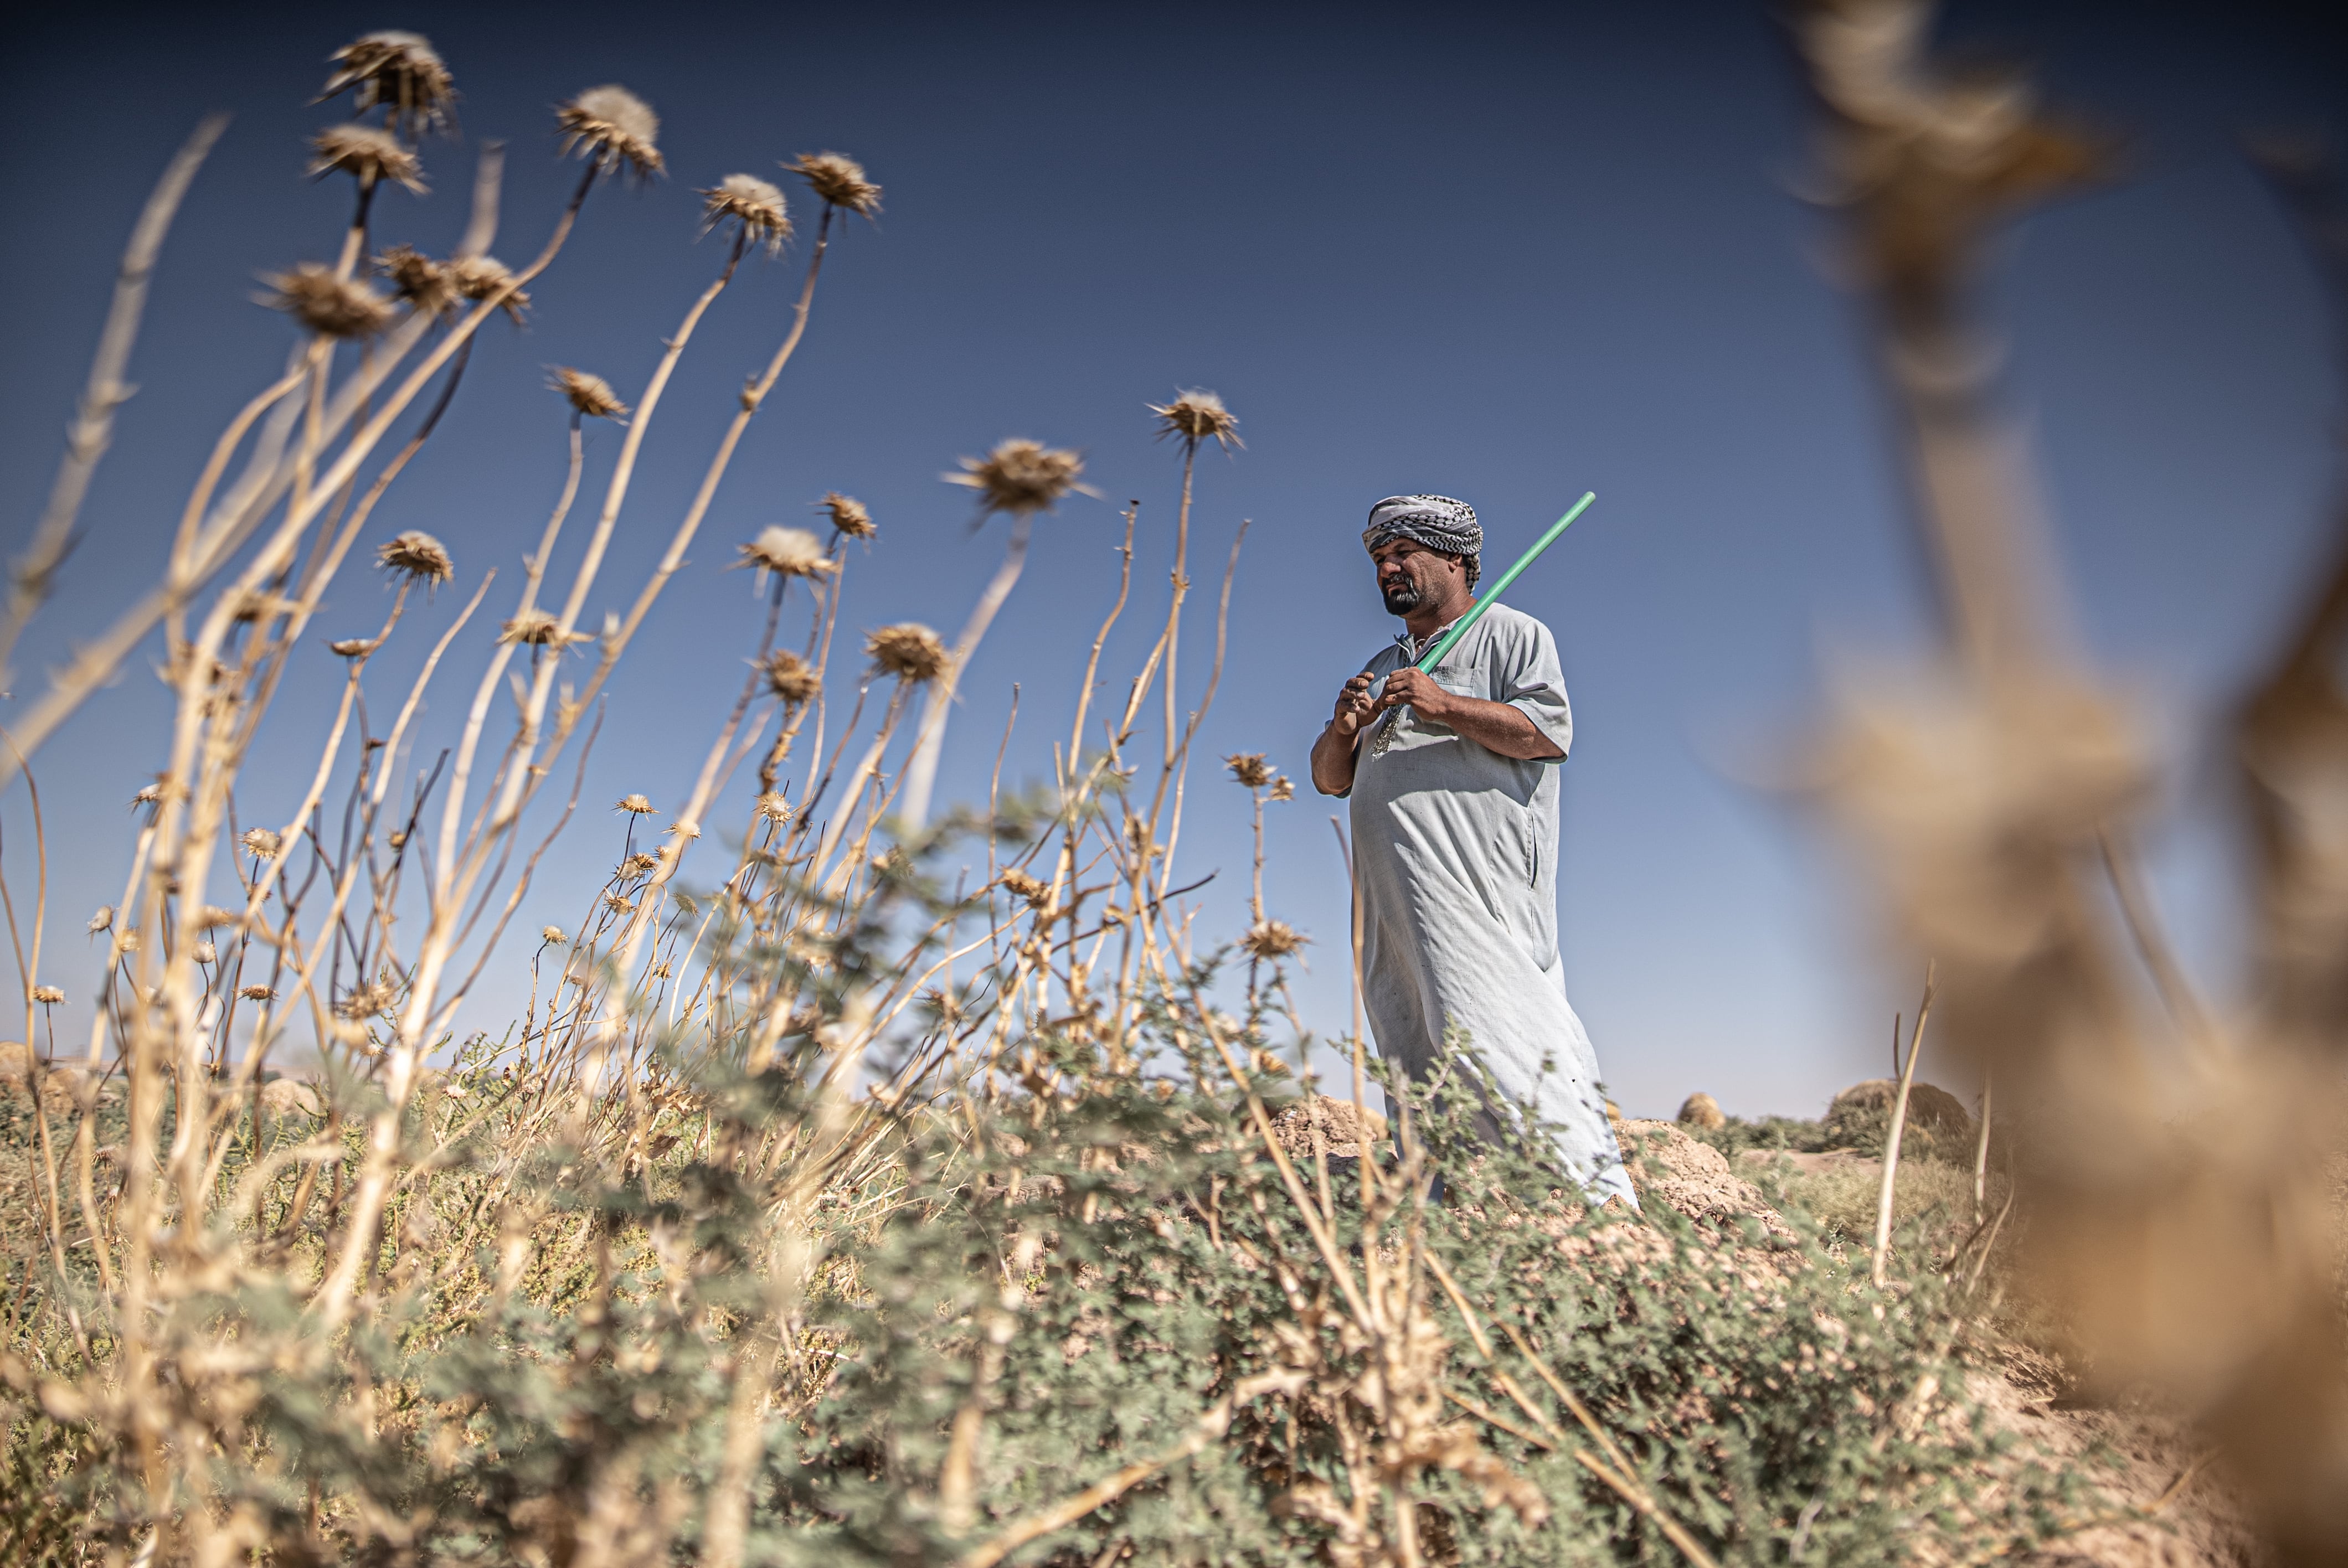 Mohammed Mayahi (39) es un ganadero de la provincia iraquí de Diyala. La crisis hídrica ha agotado el suministro de agua potable de su familia y ha matado el veinte por ciento de su rebaño de ovejas, su principal fuente de ingresos. Pincha en la imagen para ver la fotogalería completa-.